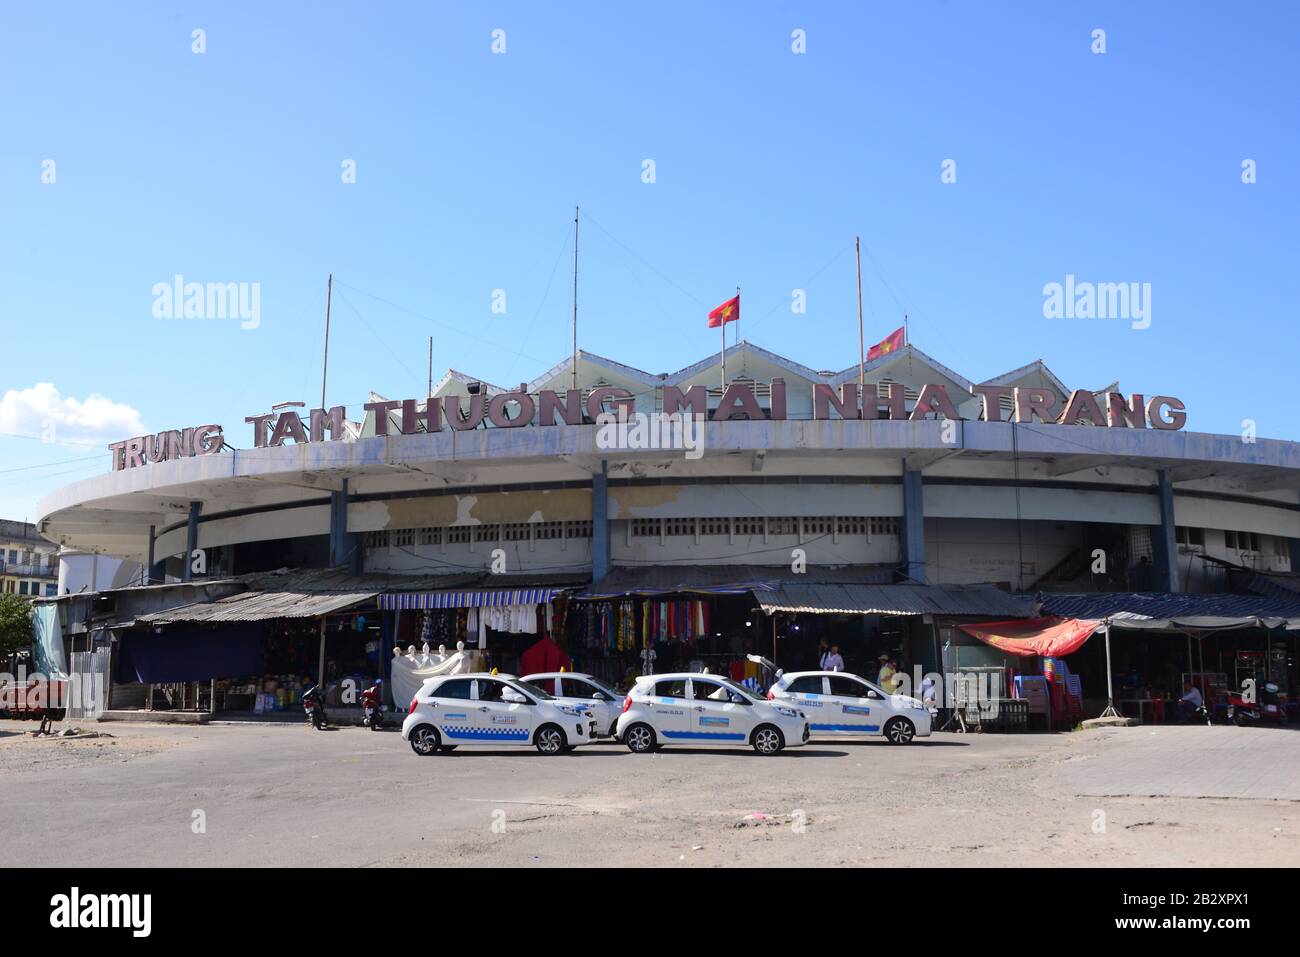 NHA TRANG, VIETNAM – 28 FEBRUARY 2020 : Nha Trang Dam Market is located at Ben Cho, Van Thanh, Nha Trang. This is the largest market of Nha Trang city Stock Photo